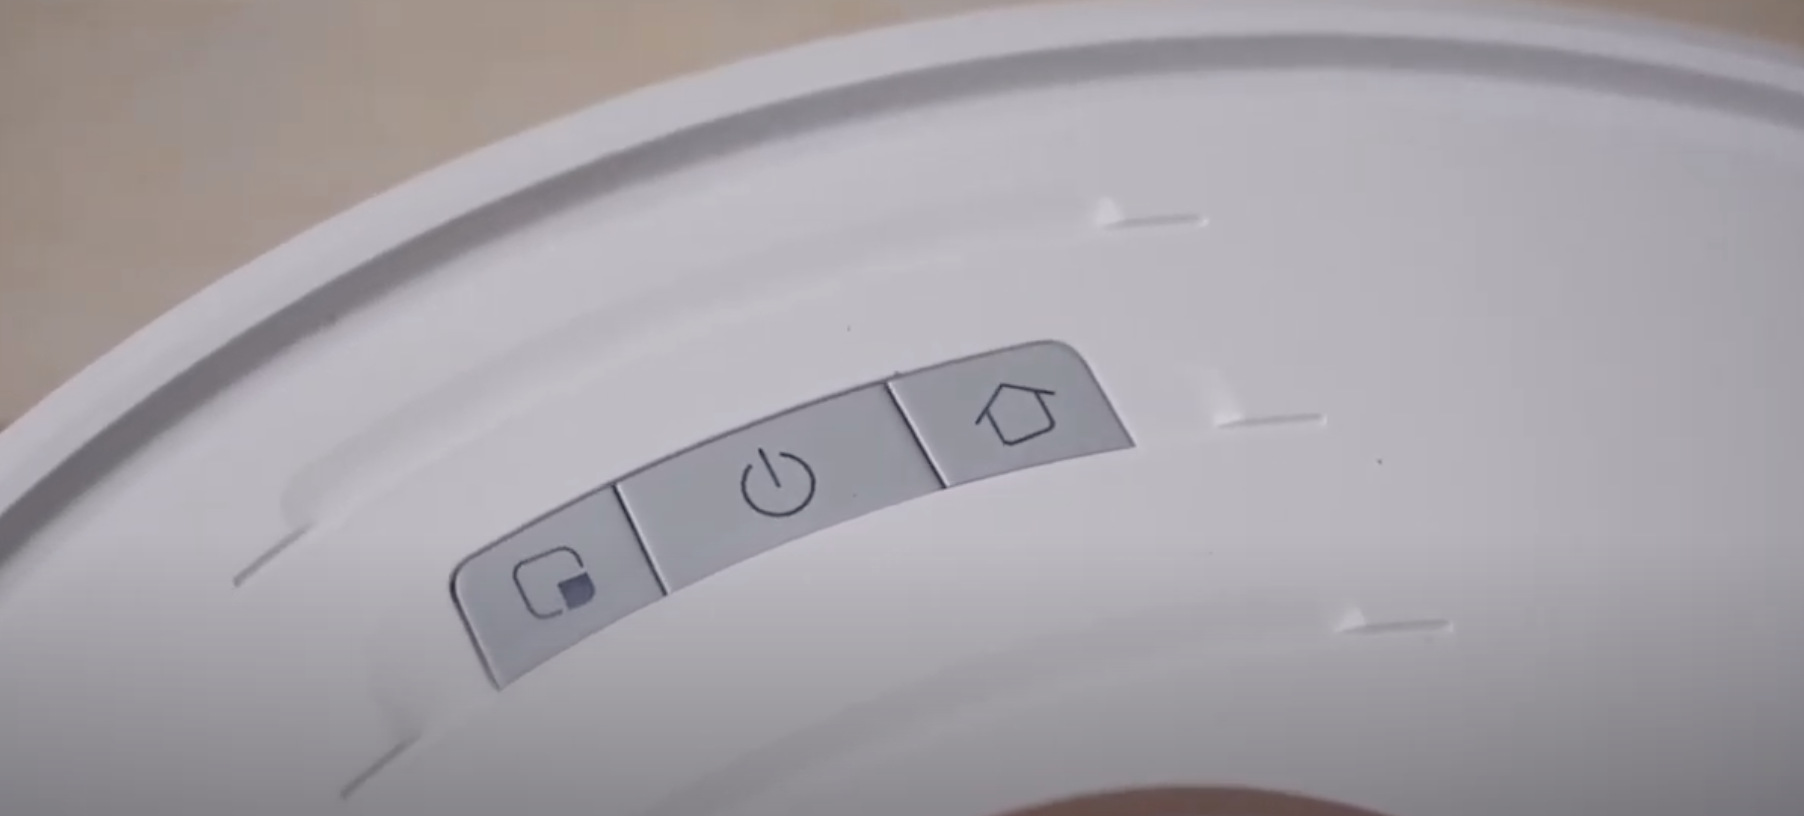 Xiaomi Robot 2020 Electric Süpürge